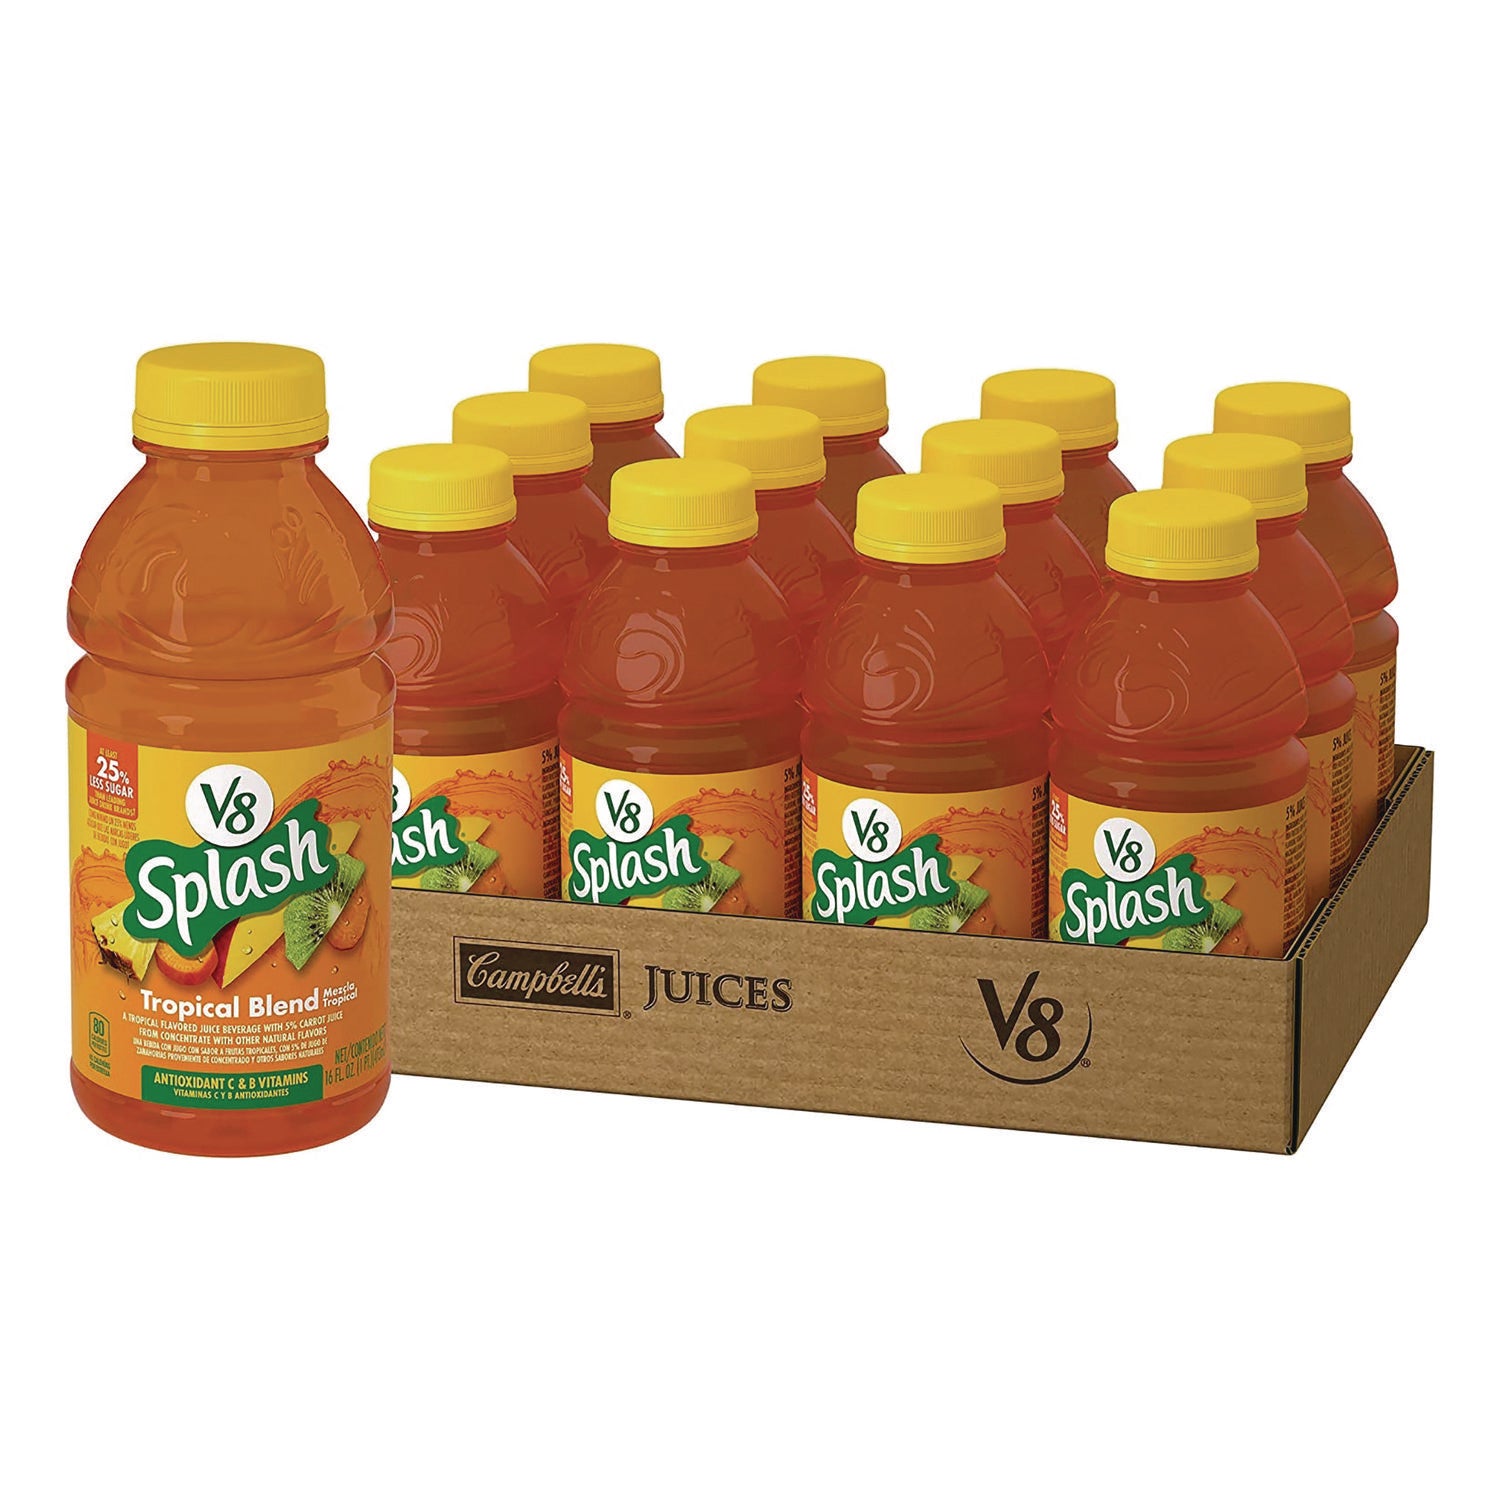 splash-tropical-blend-juice-drink-16-oz-bottle-12-carton-ships-in-1-3-business-days_grr20902593 - 1